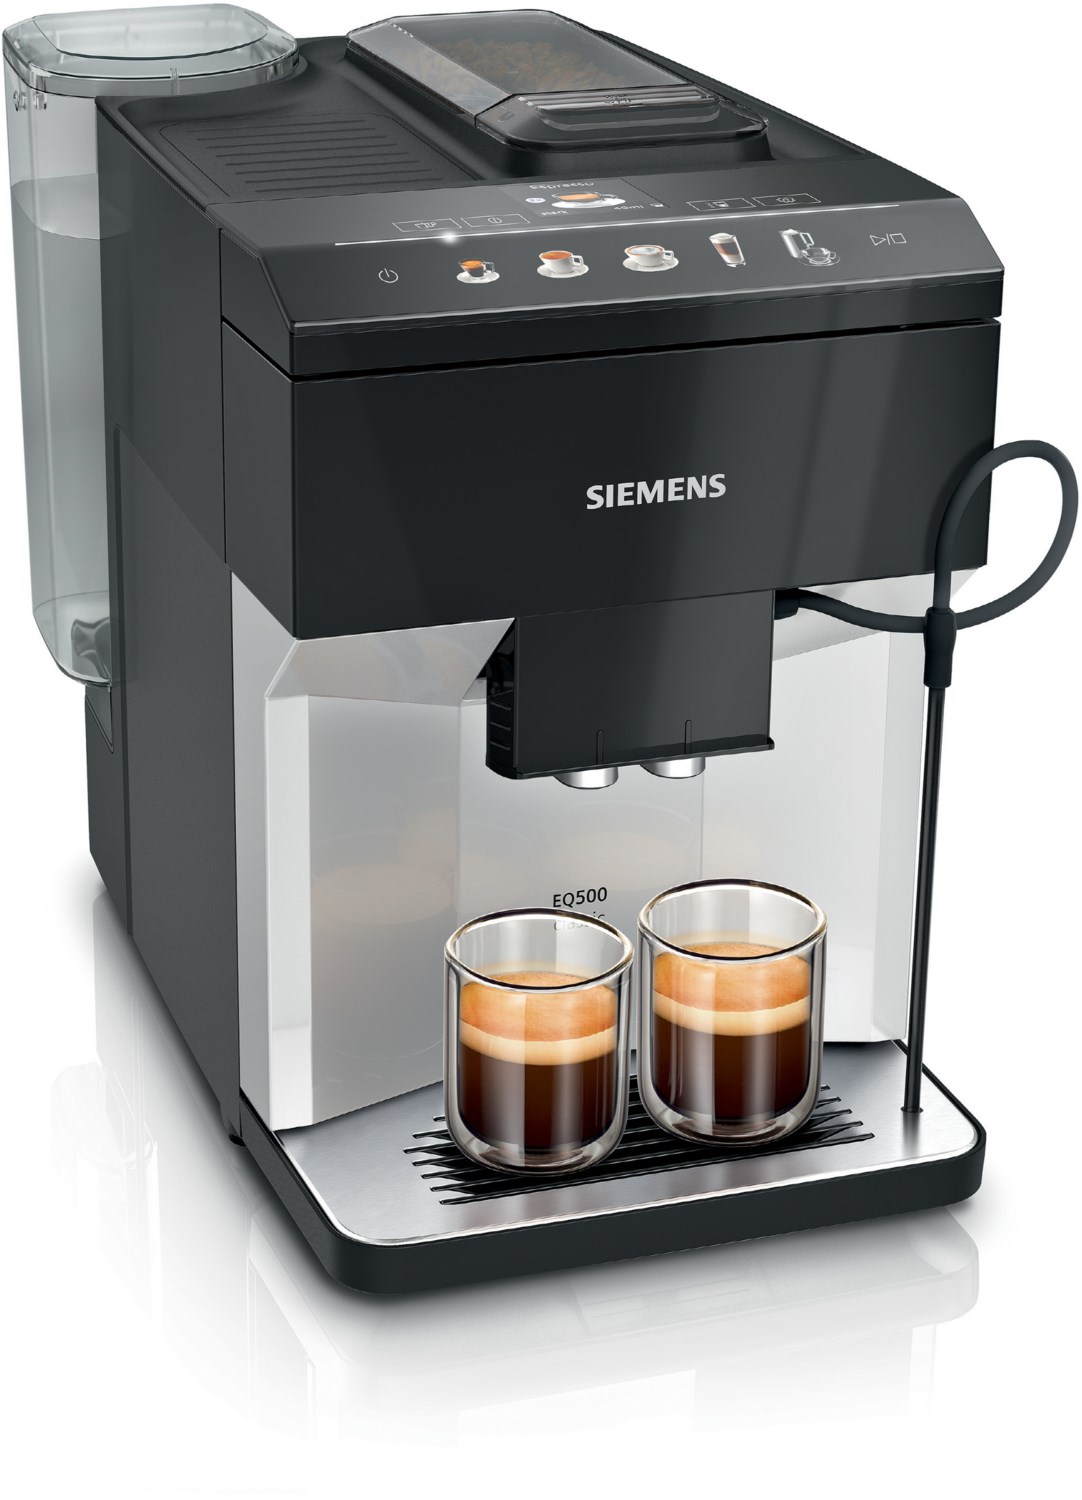 TP511D01 Kaffee-Vollautomat silber/schwarz von Siemens